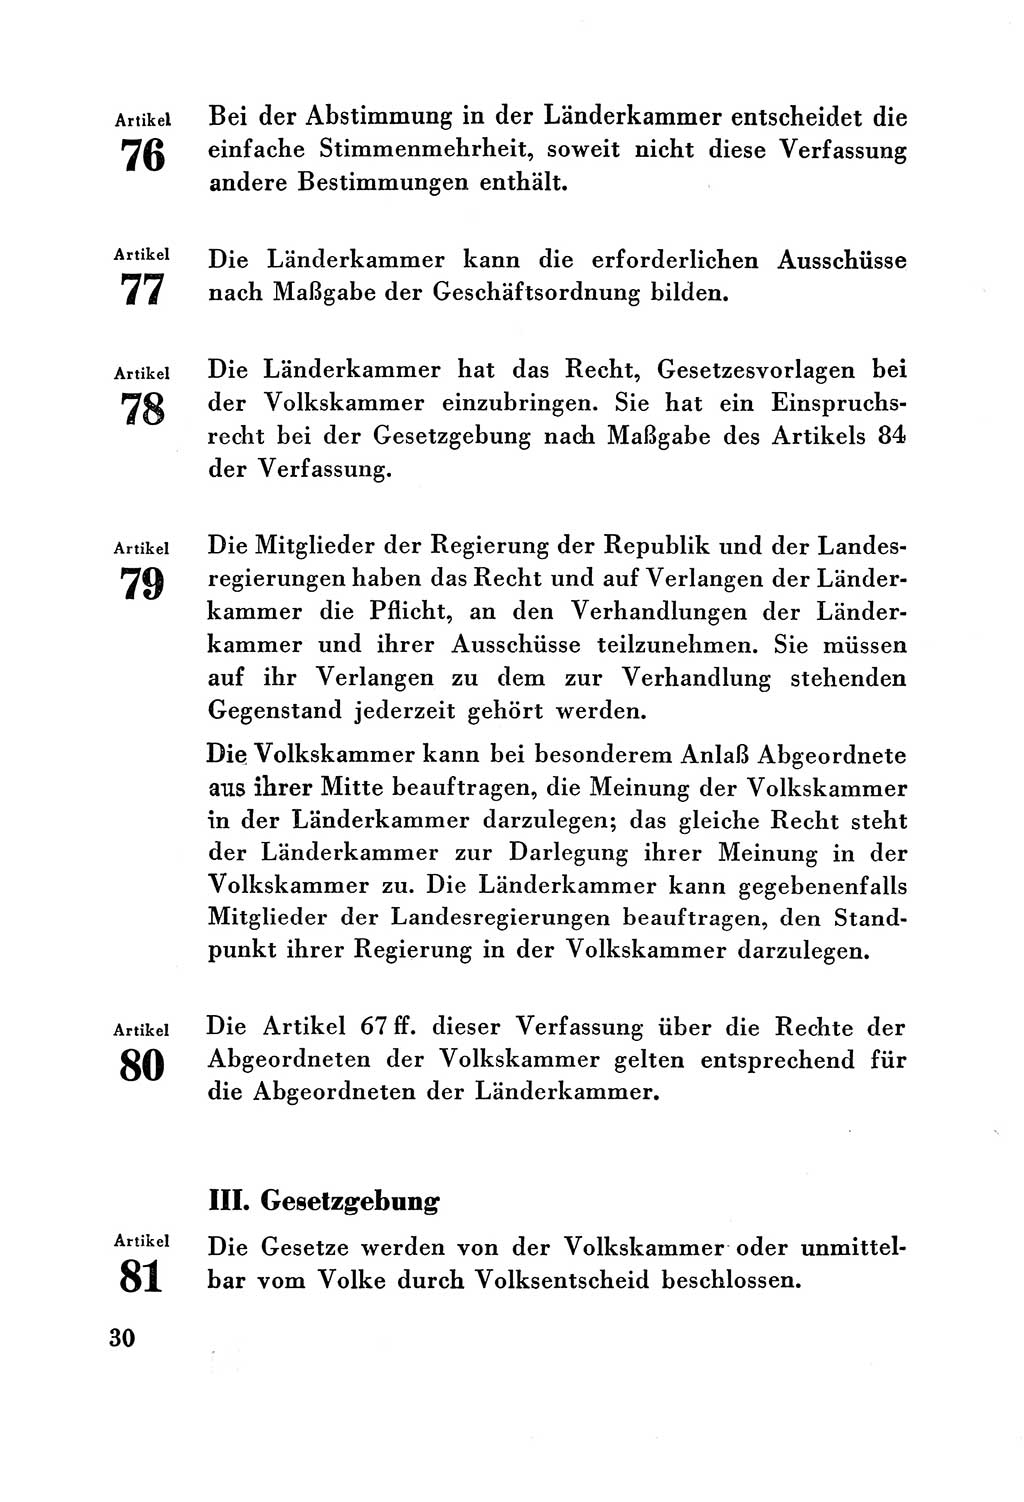 Verfassung der Deutschen Demokratischen Republik (DDR) vom 7. Oktober 1949, Seite 30 (Verf. DDR 1949, S. 30)